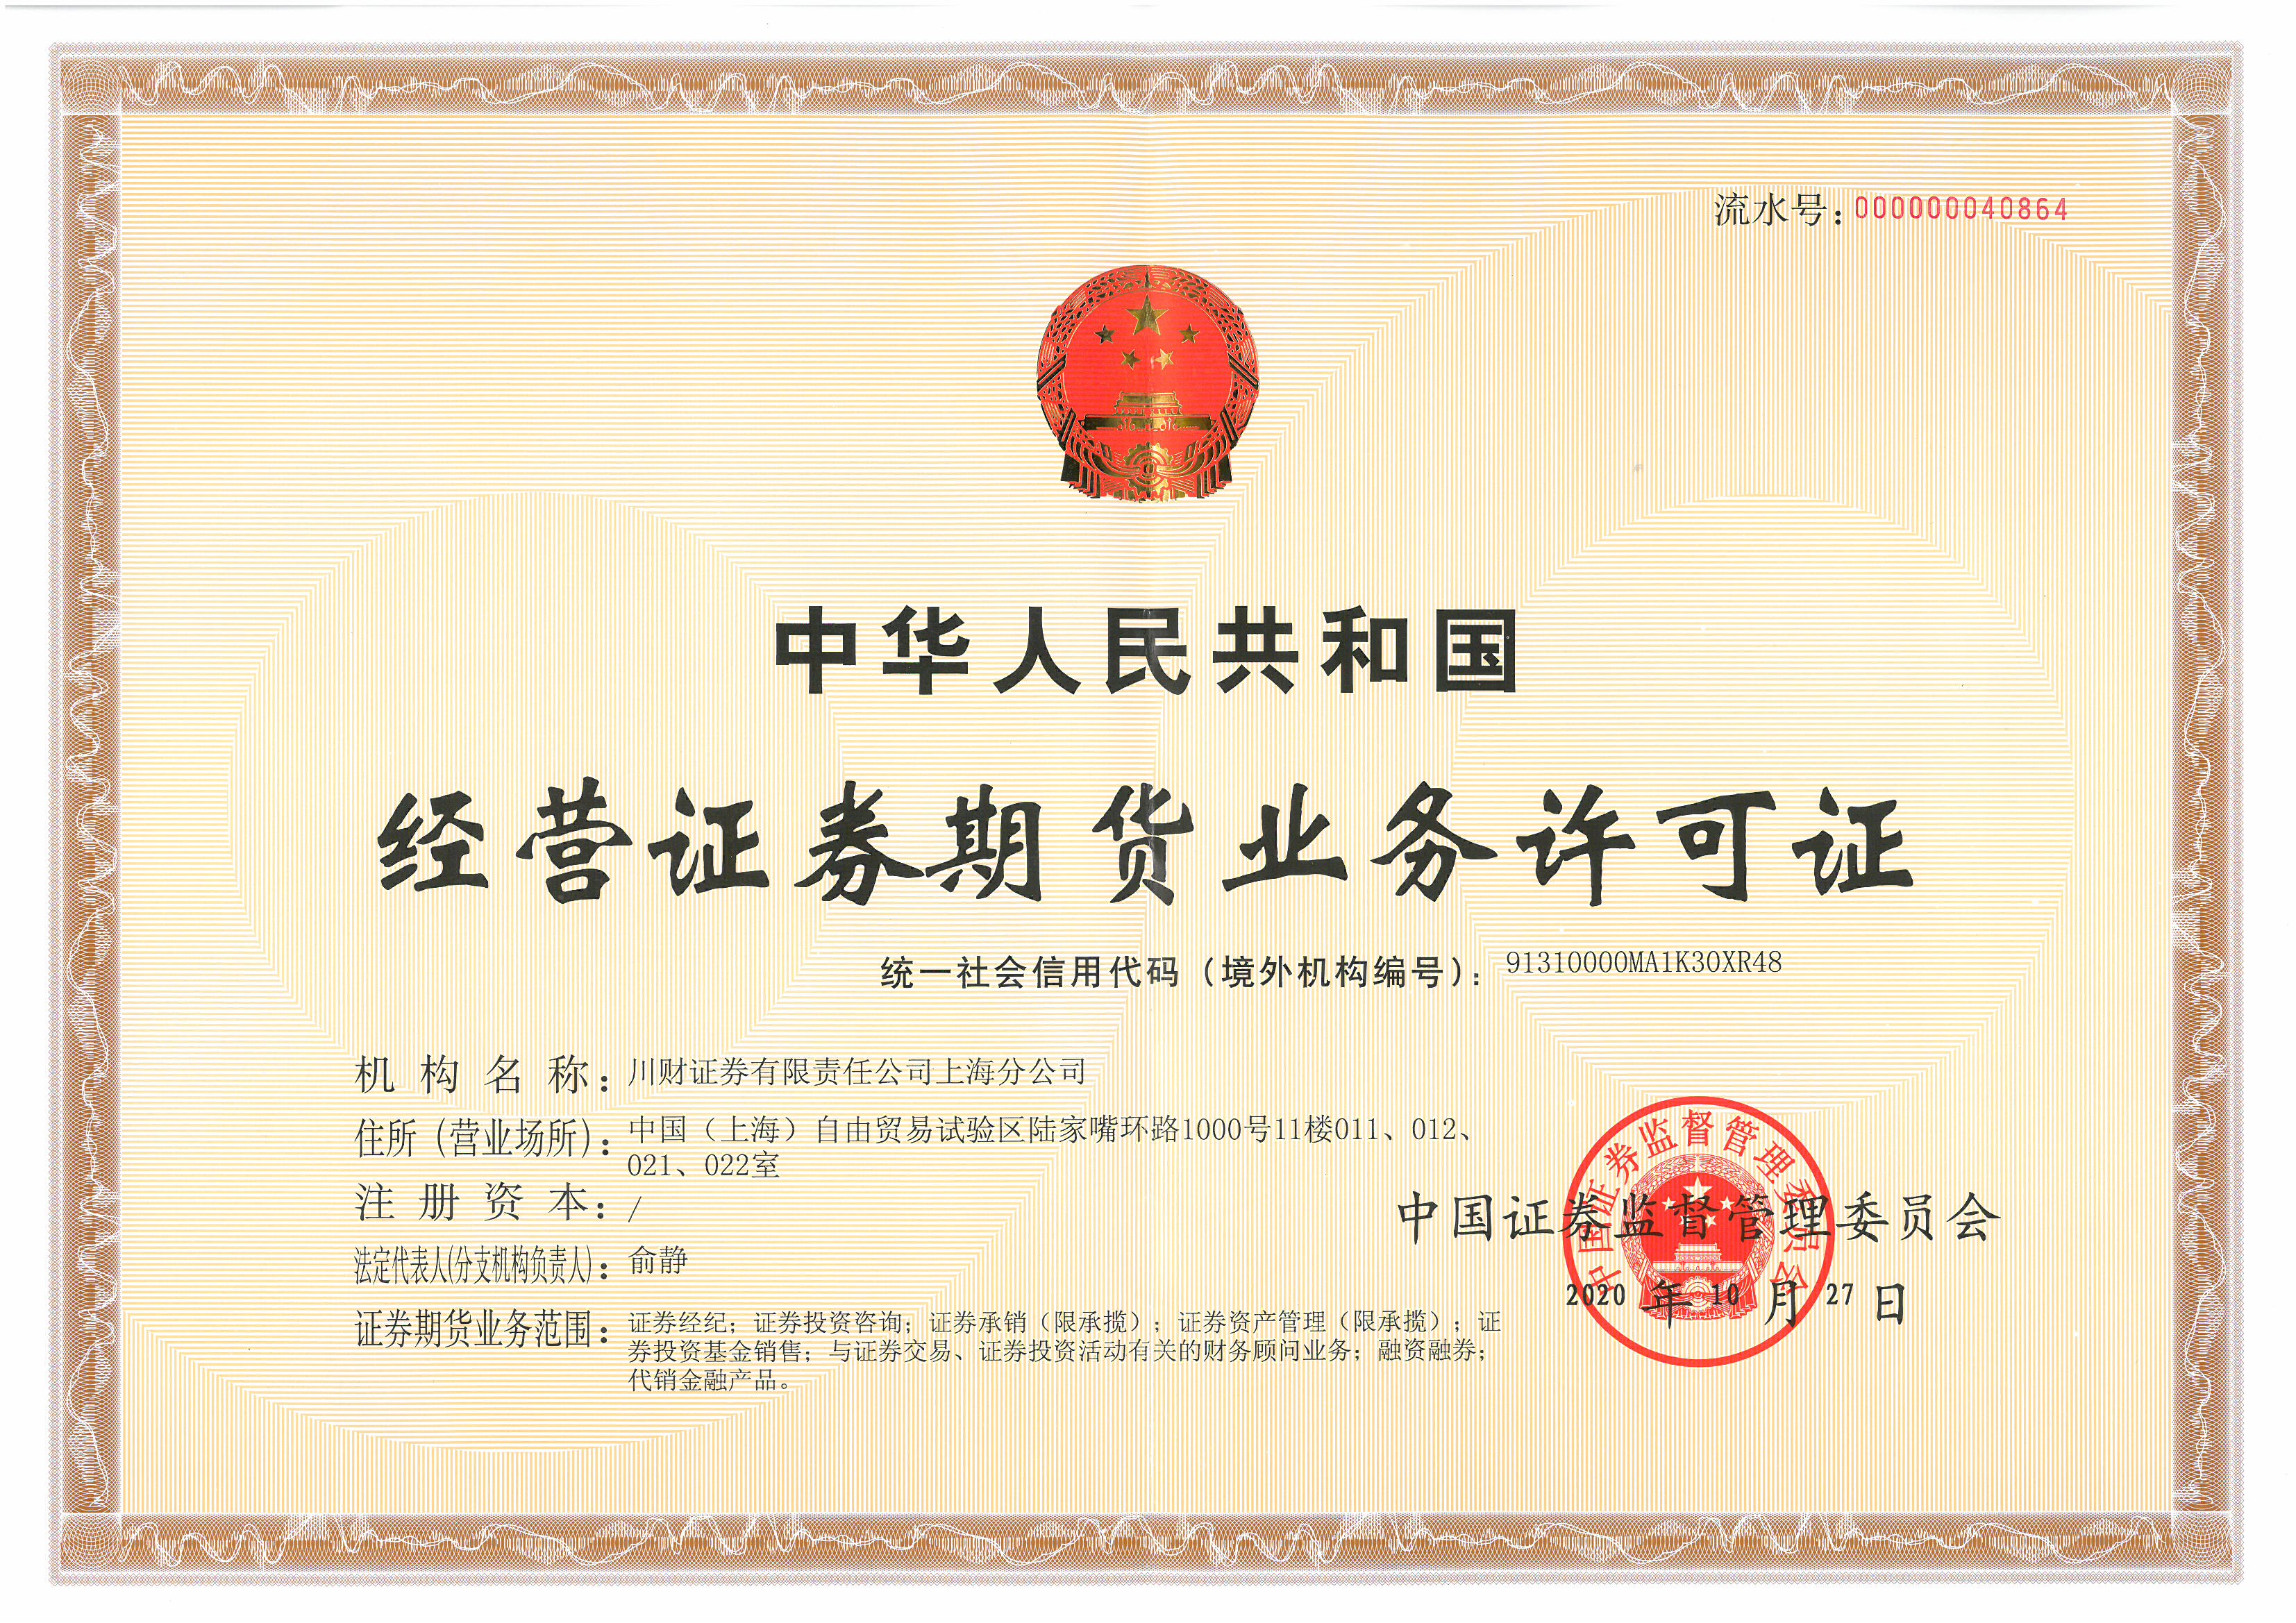 上海分公司经营证券期货业务许可证（正本-20201027）.jpg